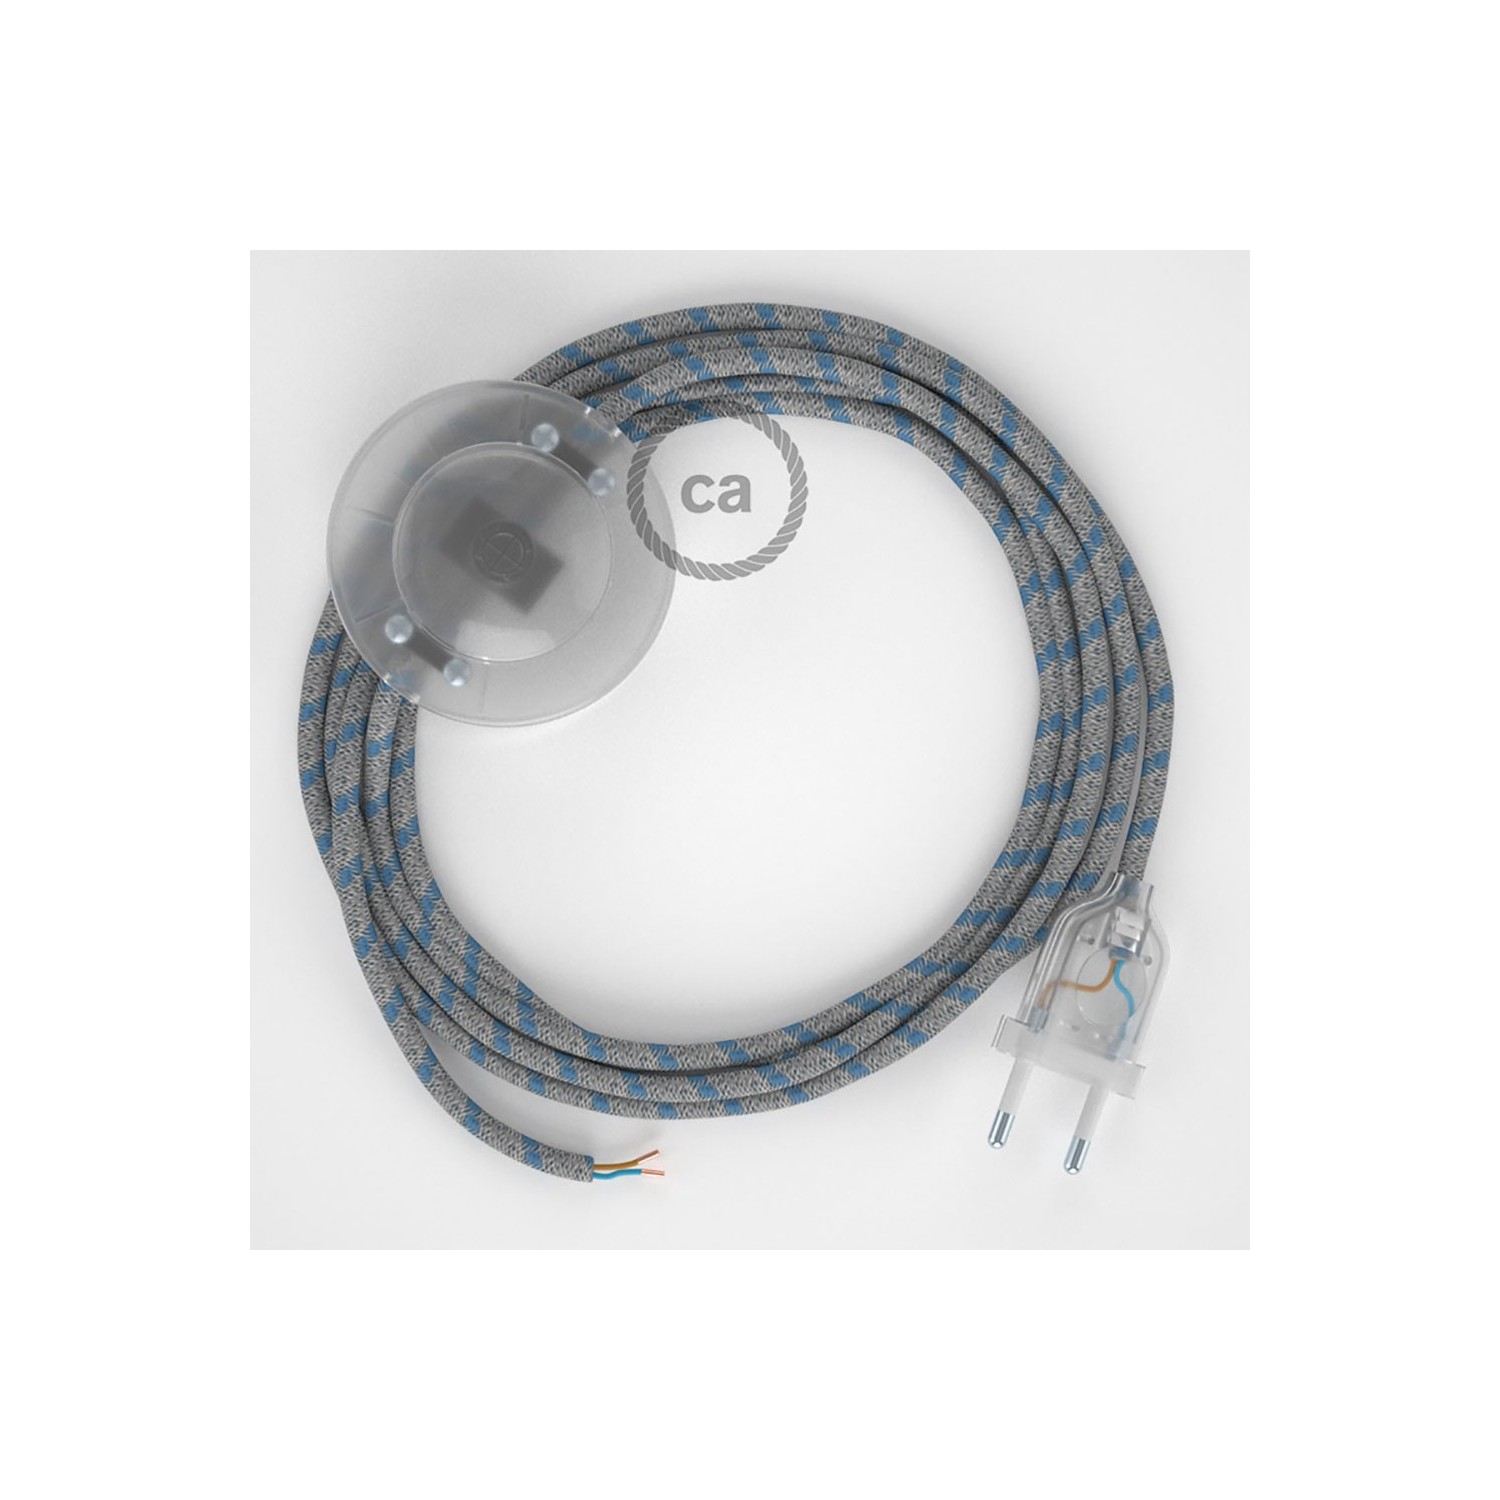 Cordon pour lampadaire, câble RD55 Stripes Bleu Steward 3 m. Choisissez la couleur de la fiche et de l'interrupteur!